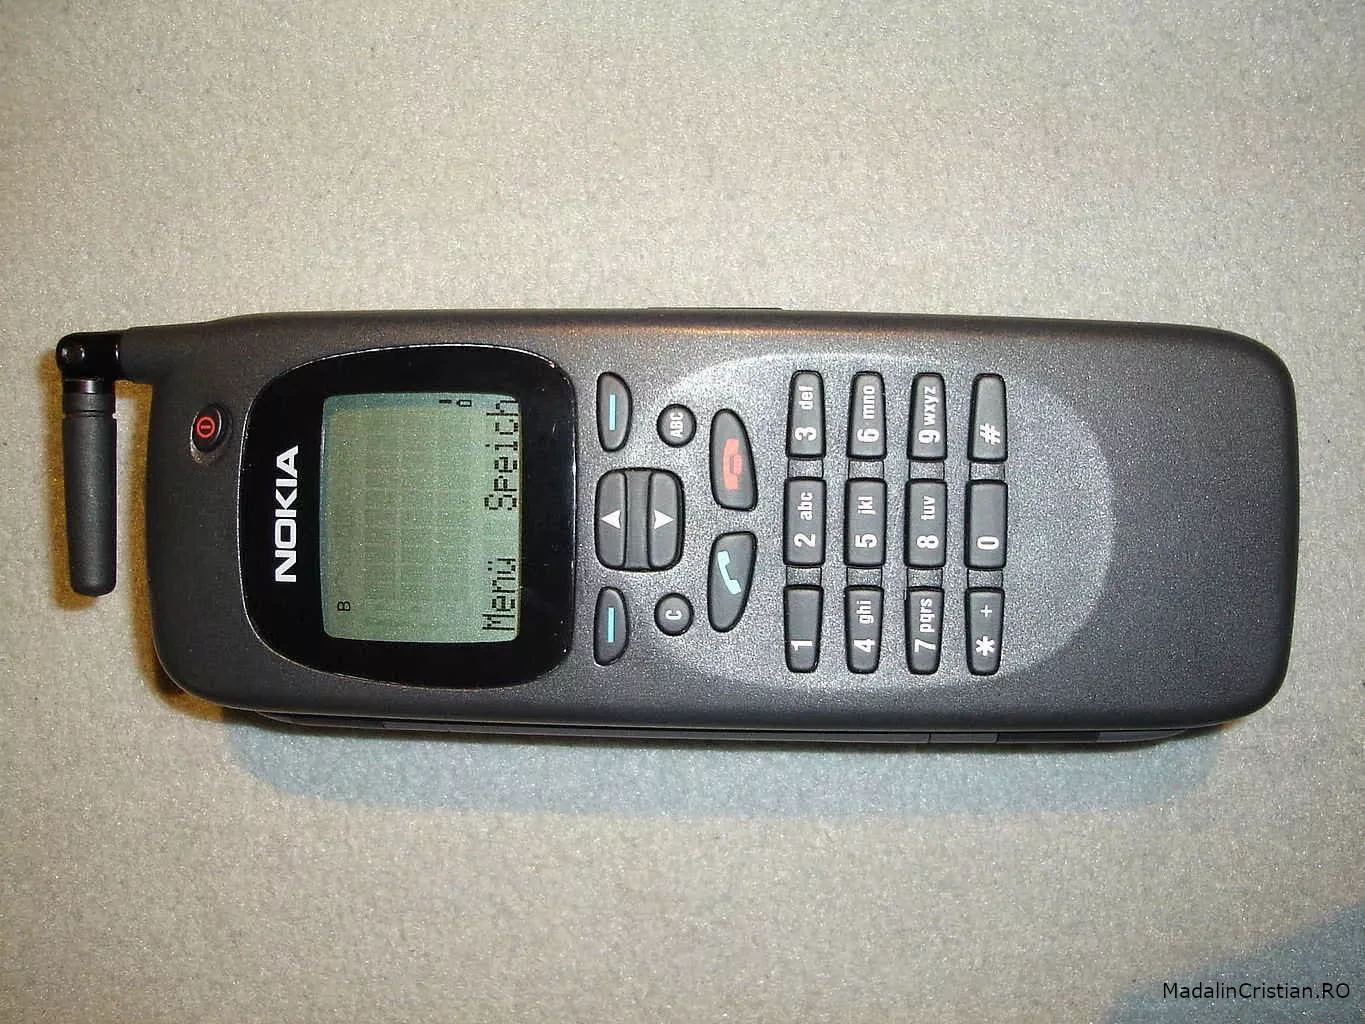 Nokia 9000 Communicator phone side